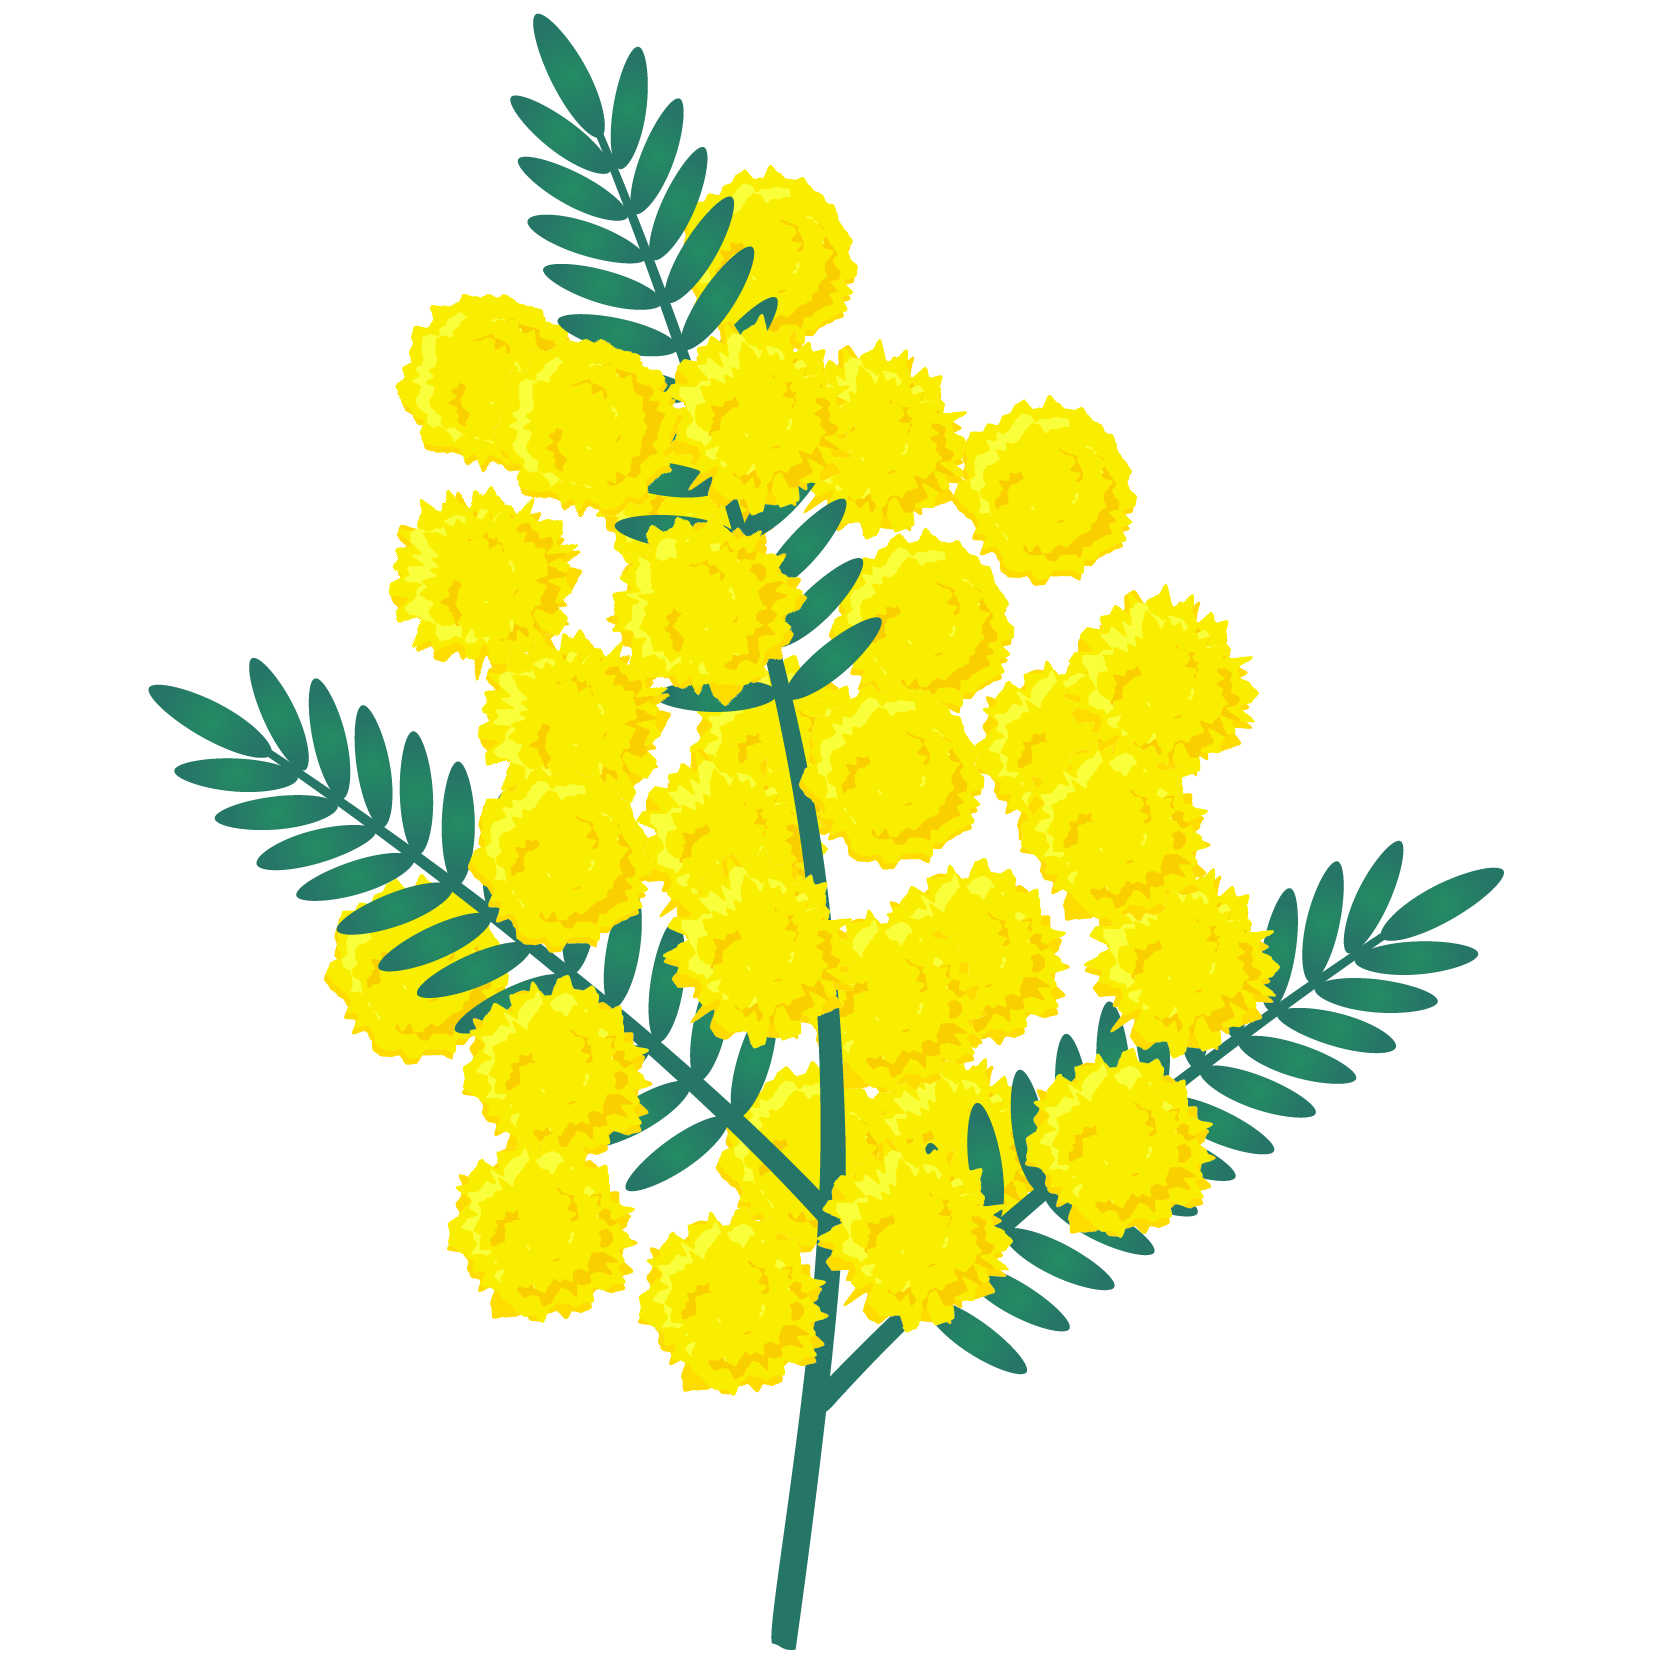 商用フリー 無料イラスト ミモザの花のイラスト Mimosaillustration001 商用ok フリー素材集 ナイスなイラスト